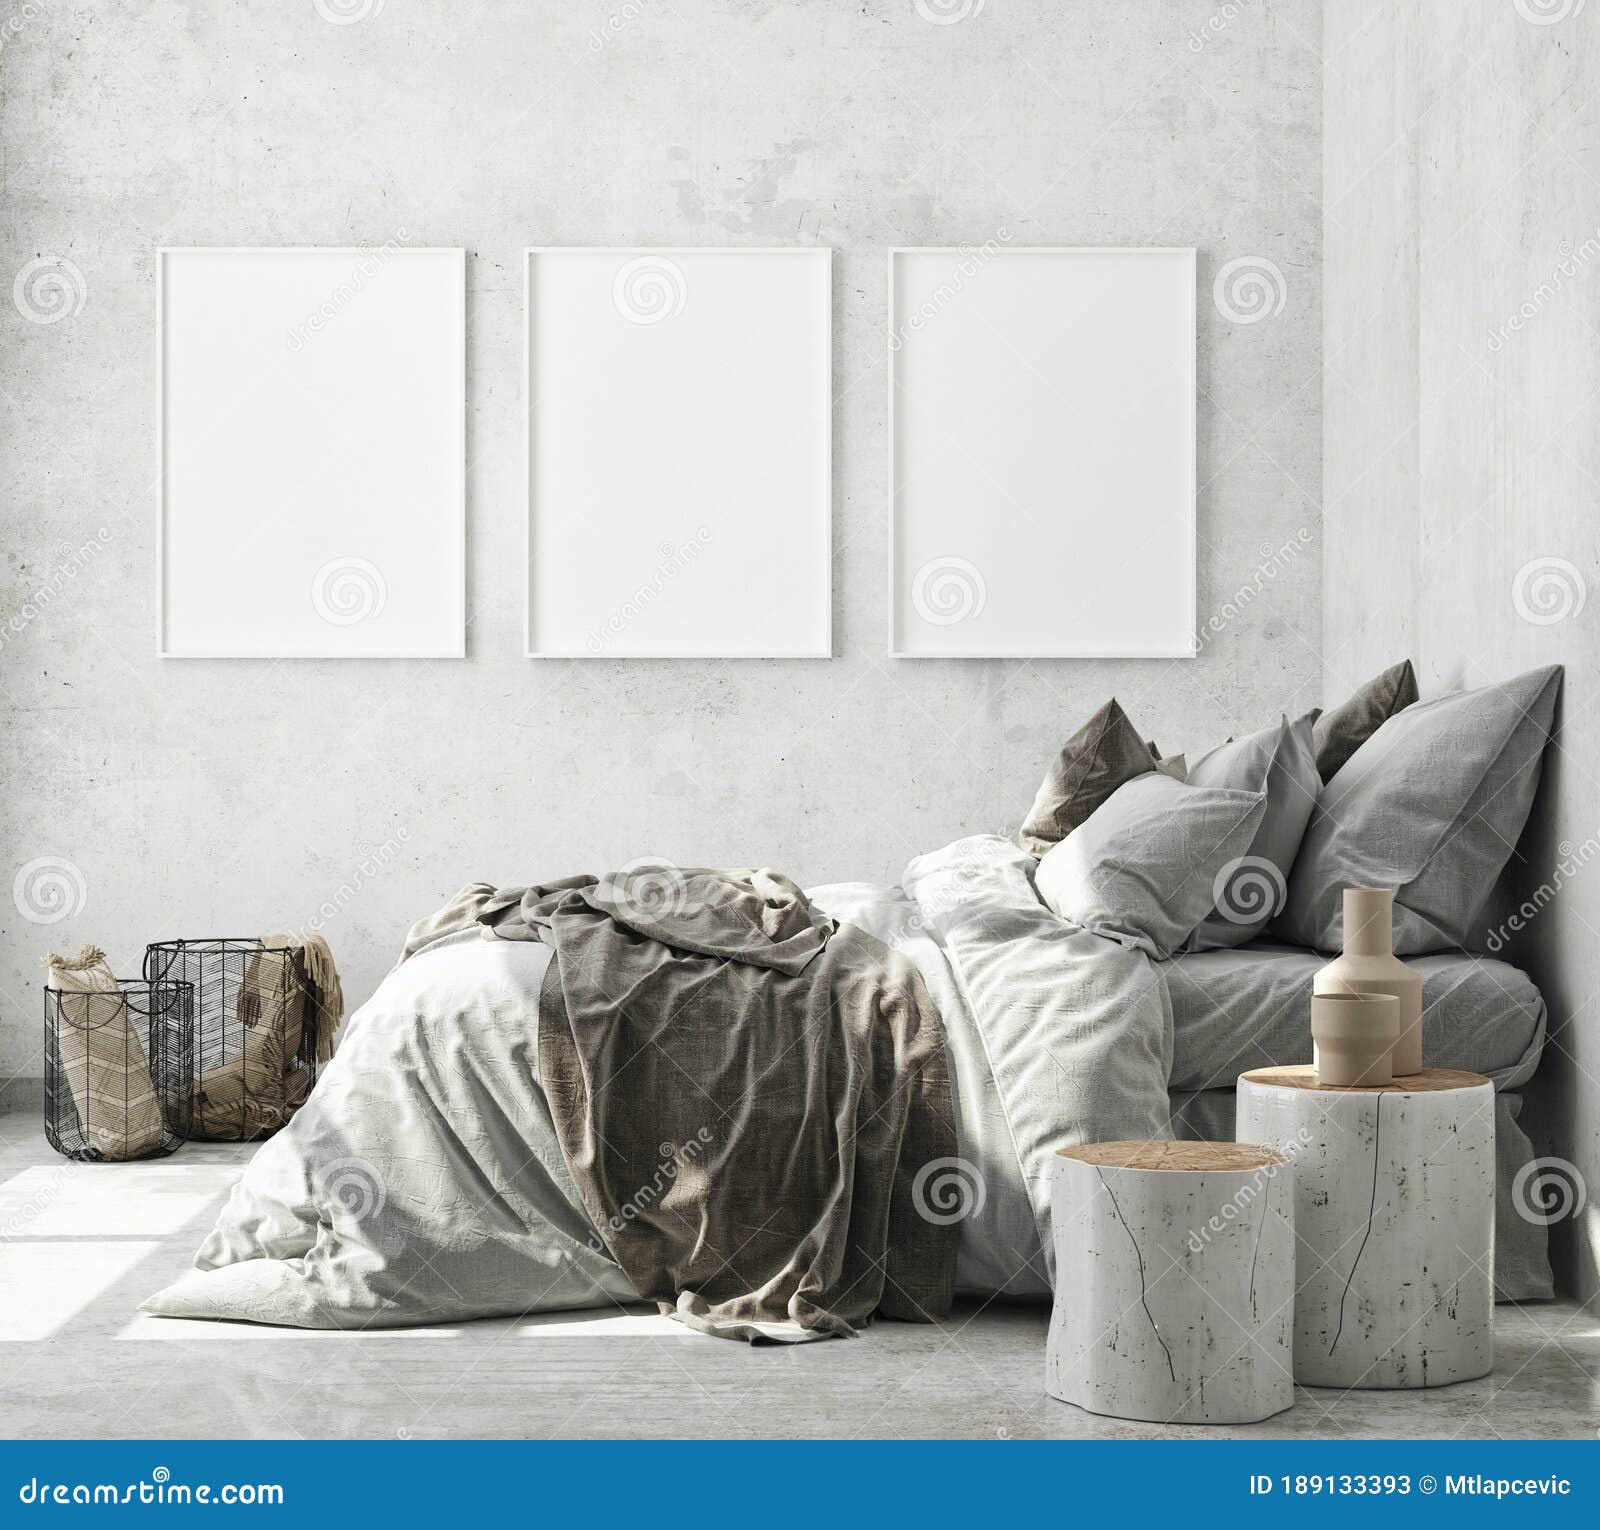 mock up poster frame in modern interior background, bedroom, scandinavian style, 3d render